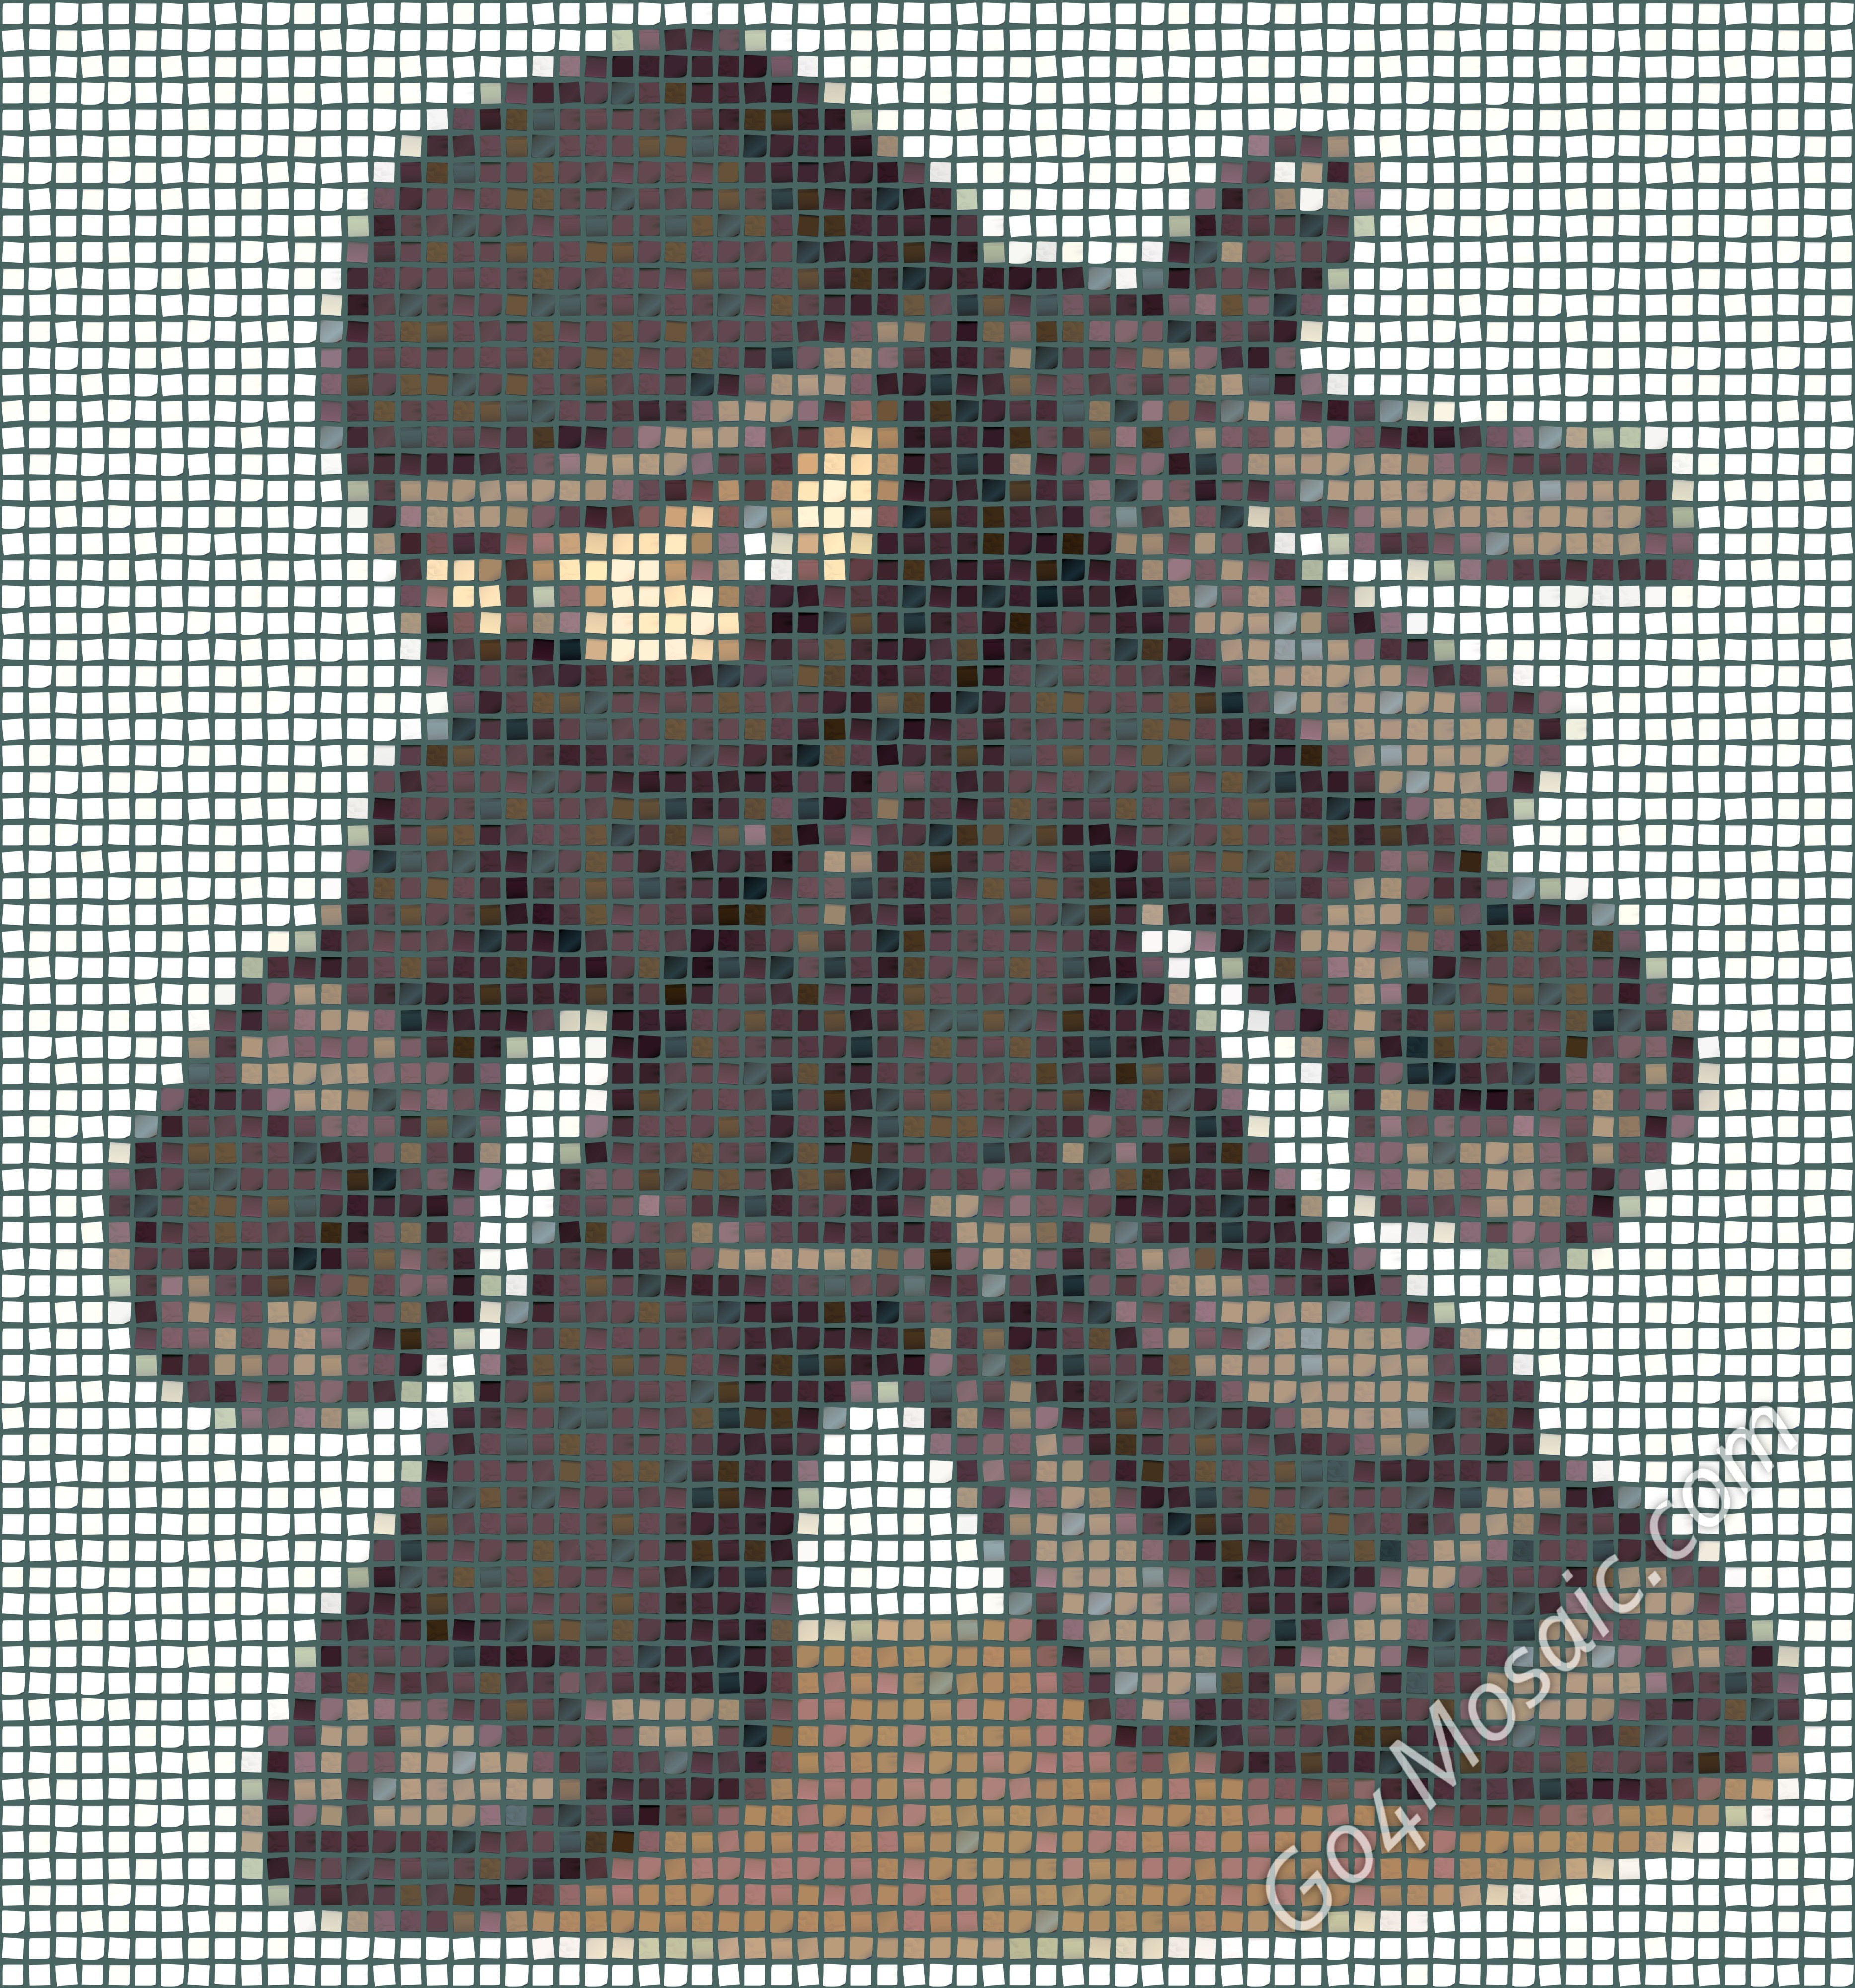 Mini Ninja mosaic from Postits